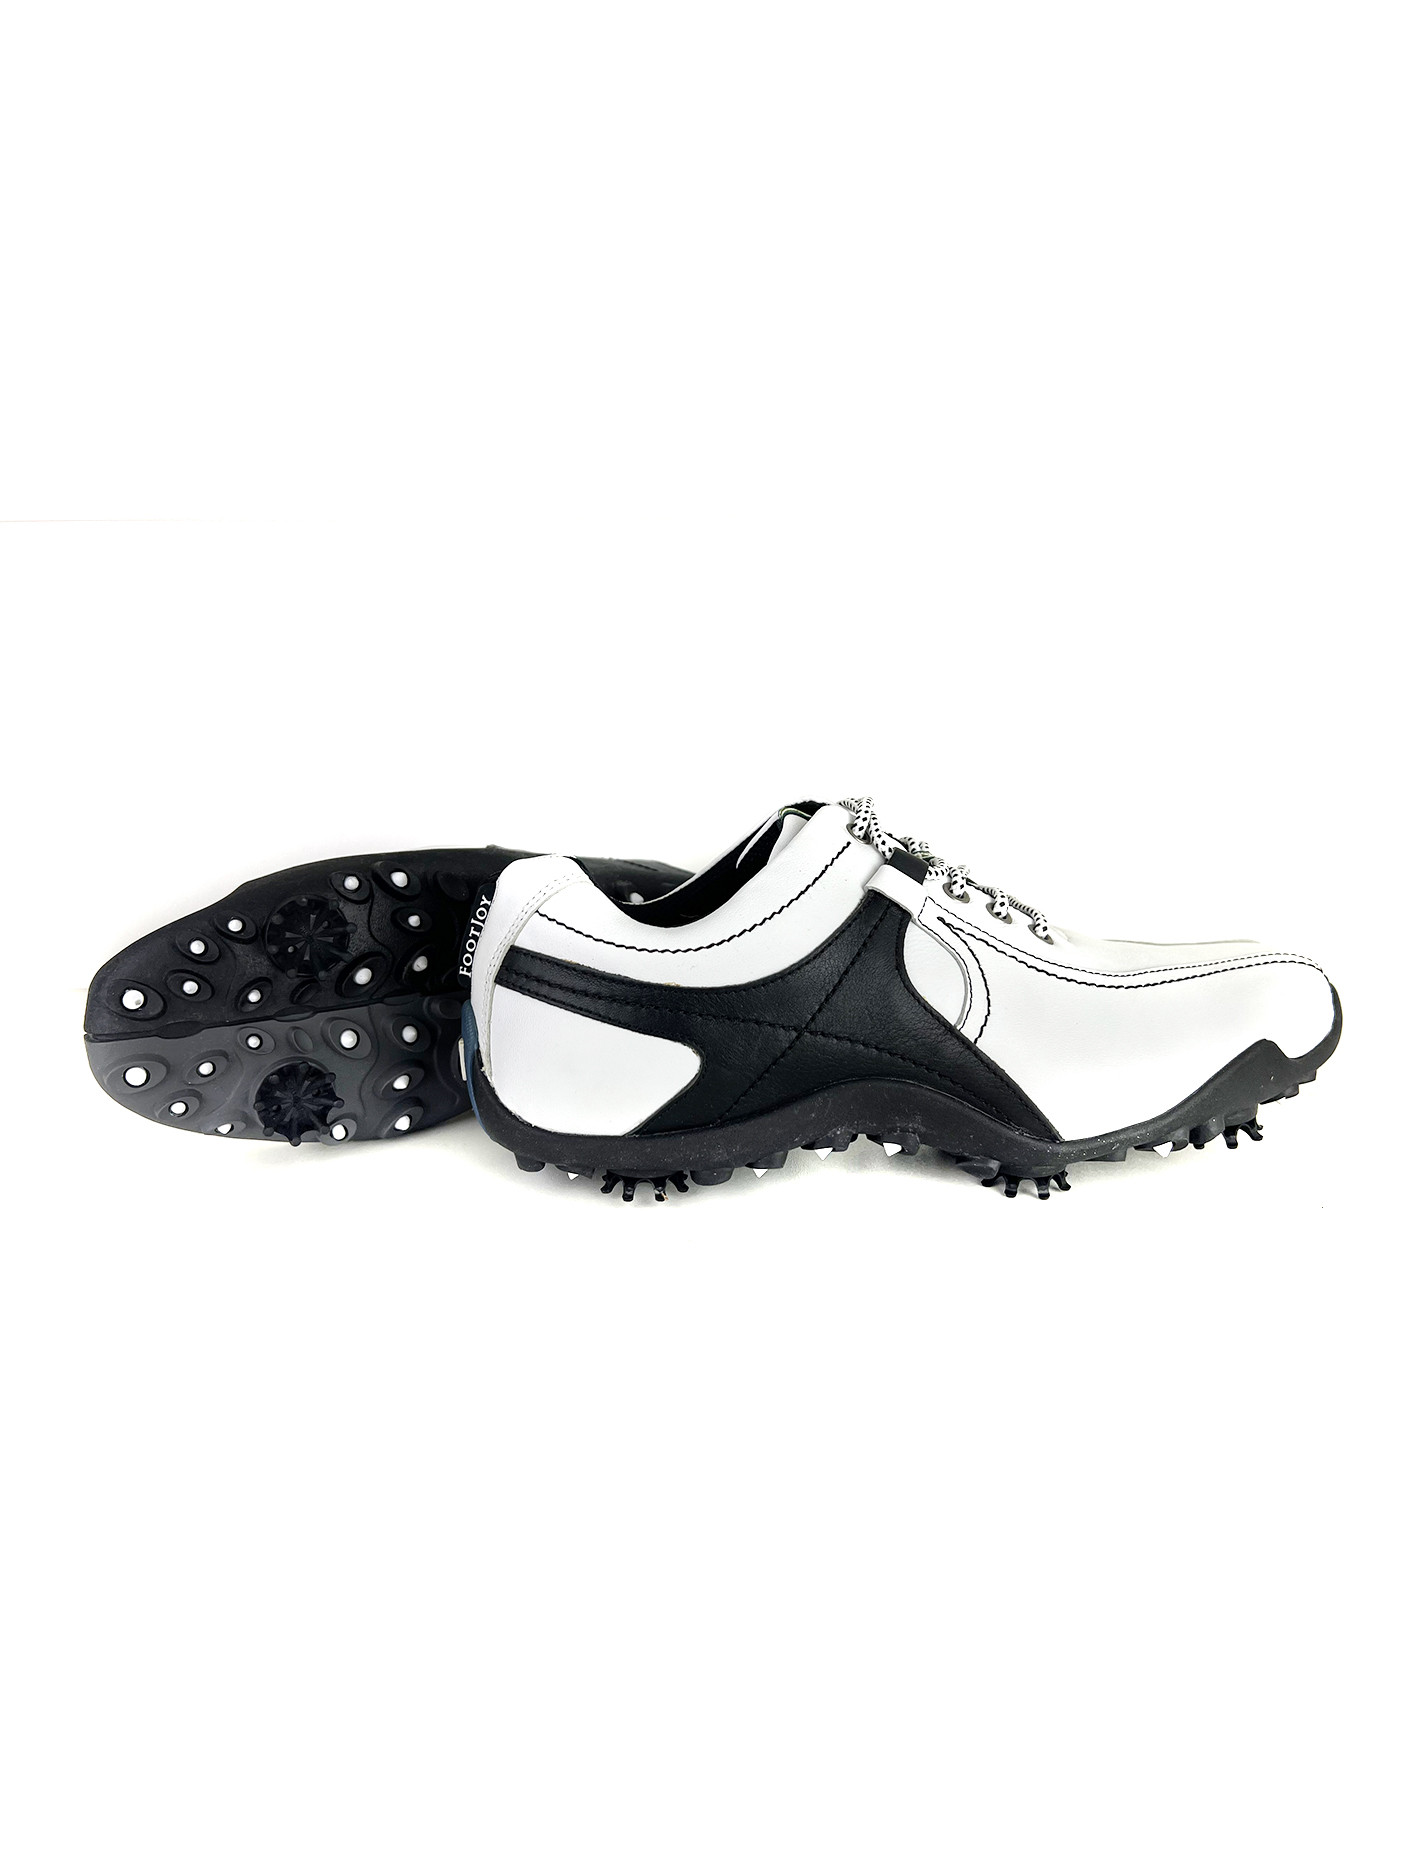 Pánská golfová obuv 56767K - FootJoy bílá-černá 44